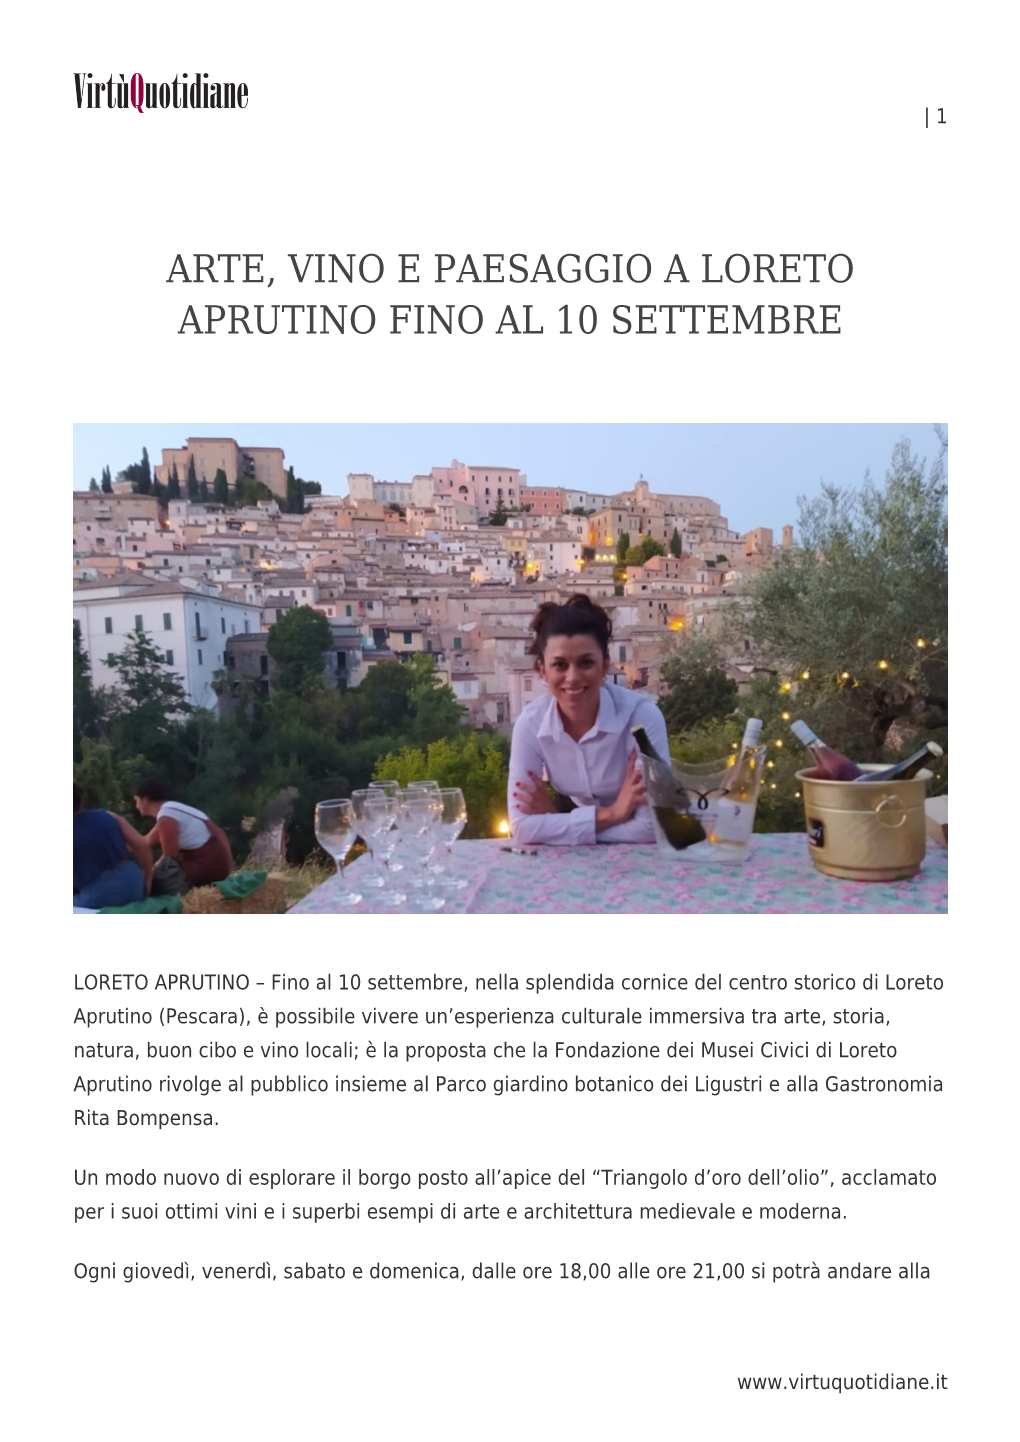 Arte, Vino E Paesaggio a Loreto Aprutino Fino Al 10 Settembre